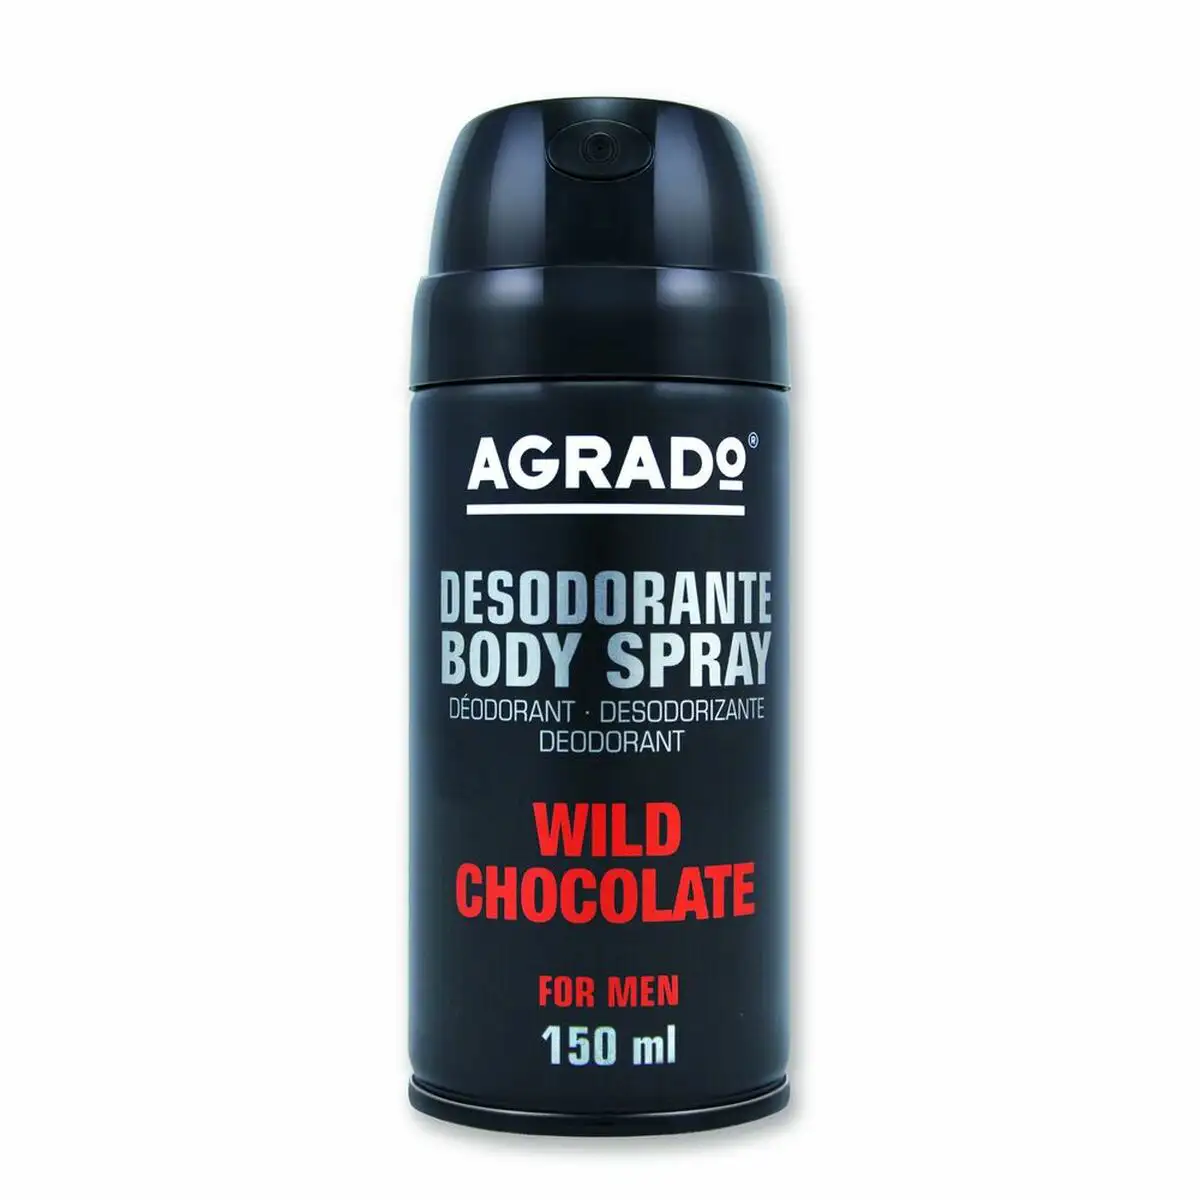 Spray deodorant agrado wild chocolate_3866. Bienvenue chez DIAYTAR SENEGAL - Où Chaque Achat Fait une Différence. Découvrez notre gamme de produits qui reflètent l'engagement envers la qualité et le respect de l'environnement.